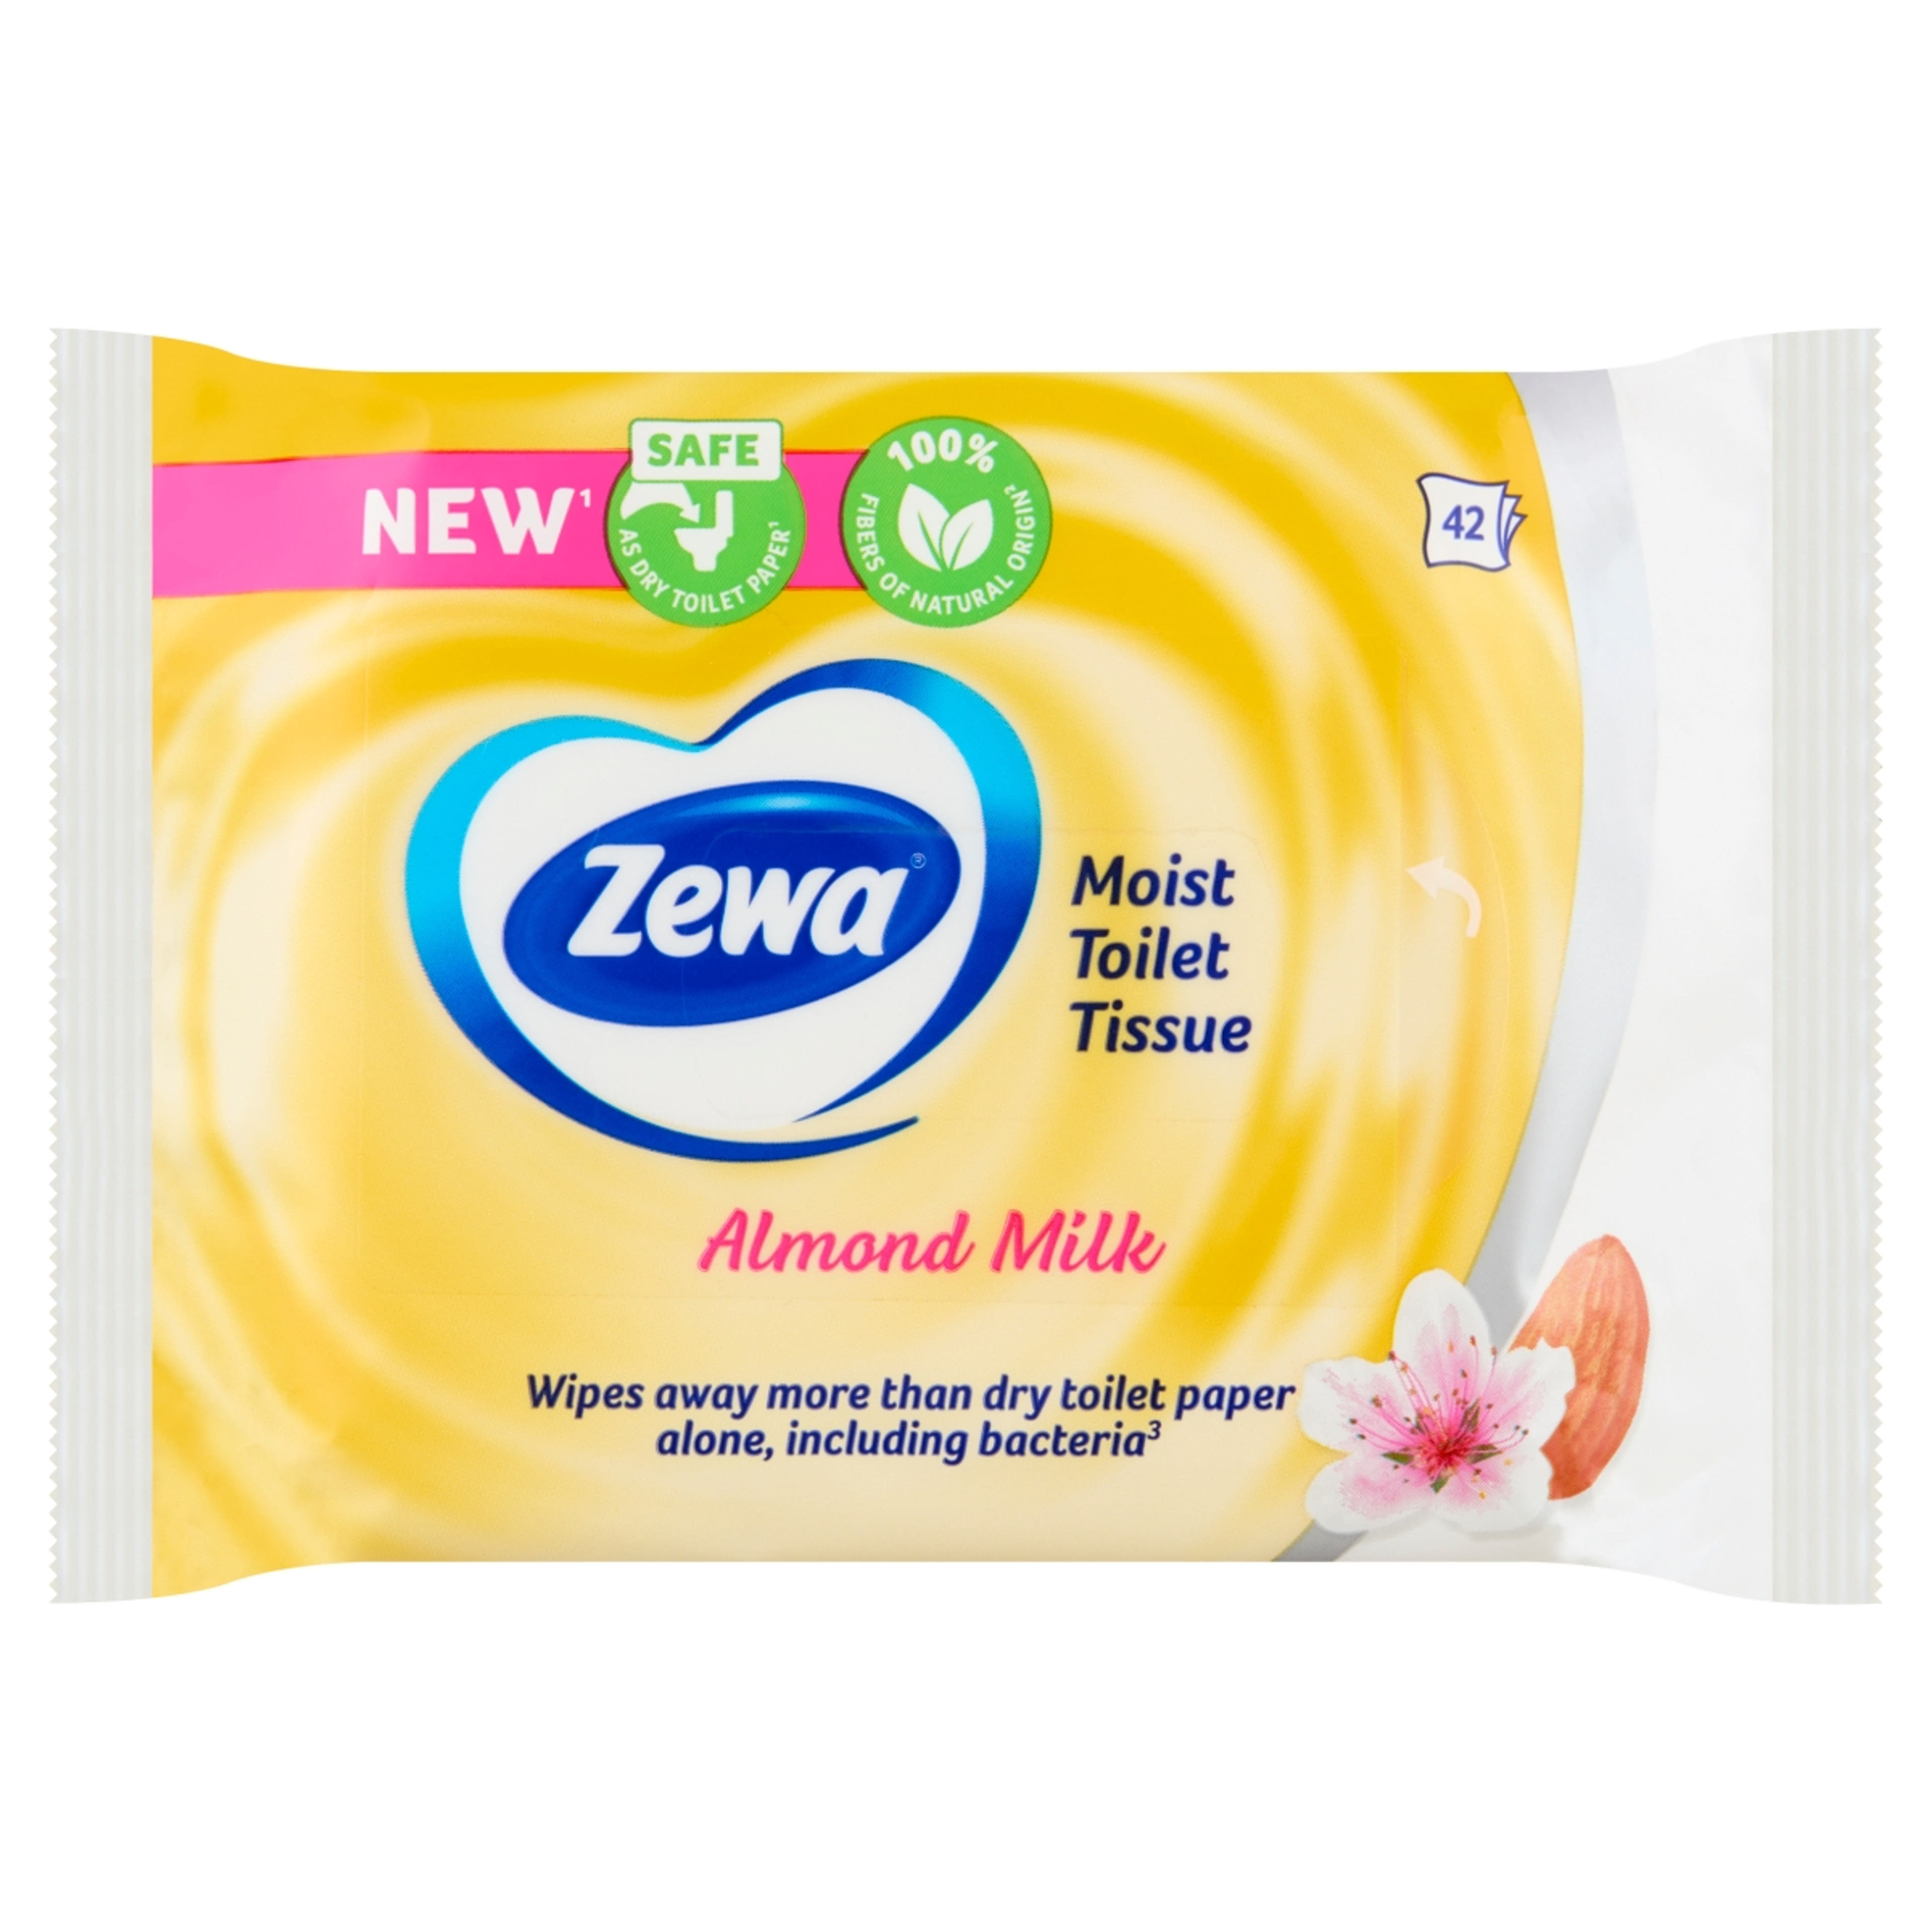 Zewa Almond Milk nedves toalettpapír  - 42 db